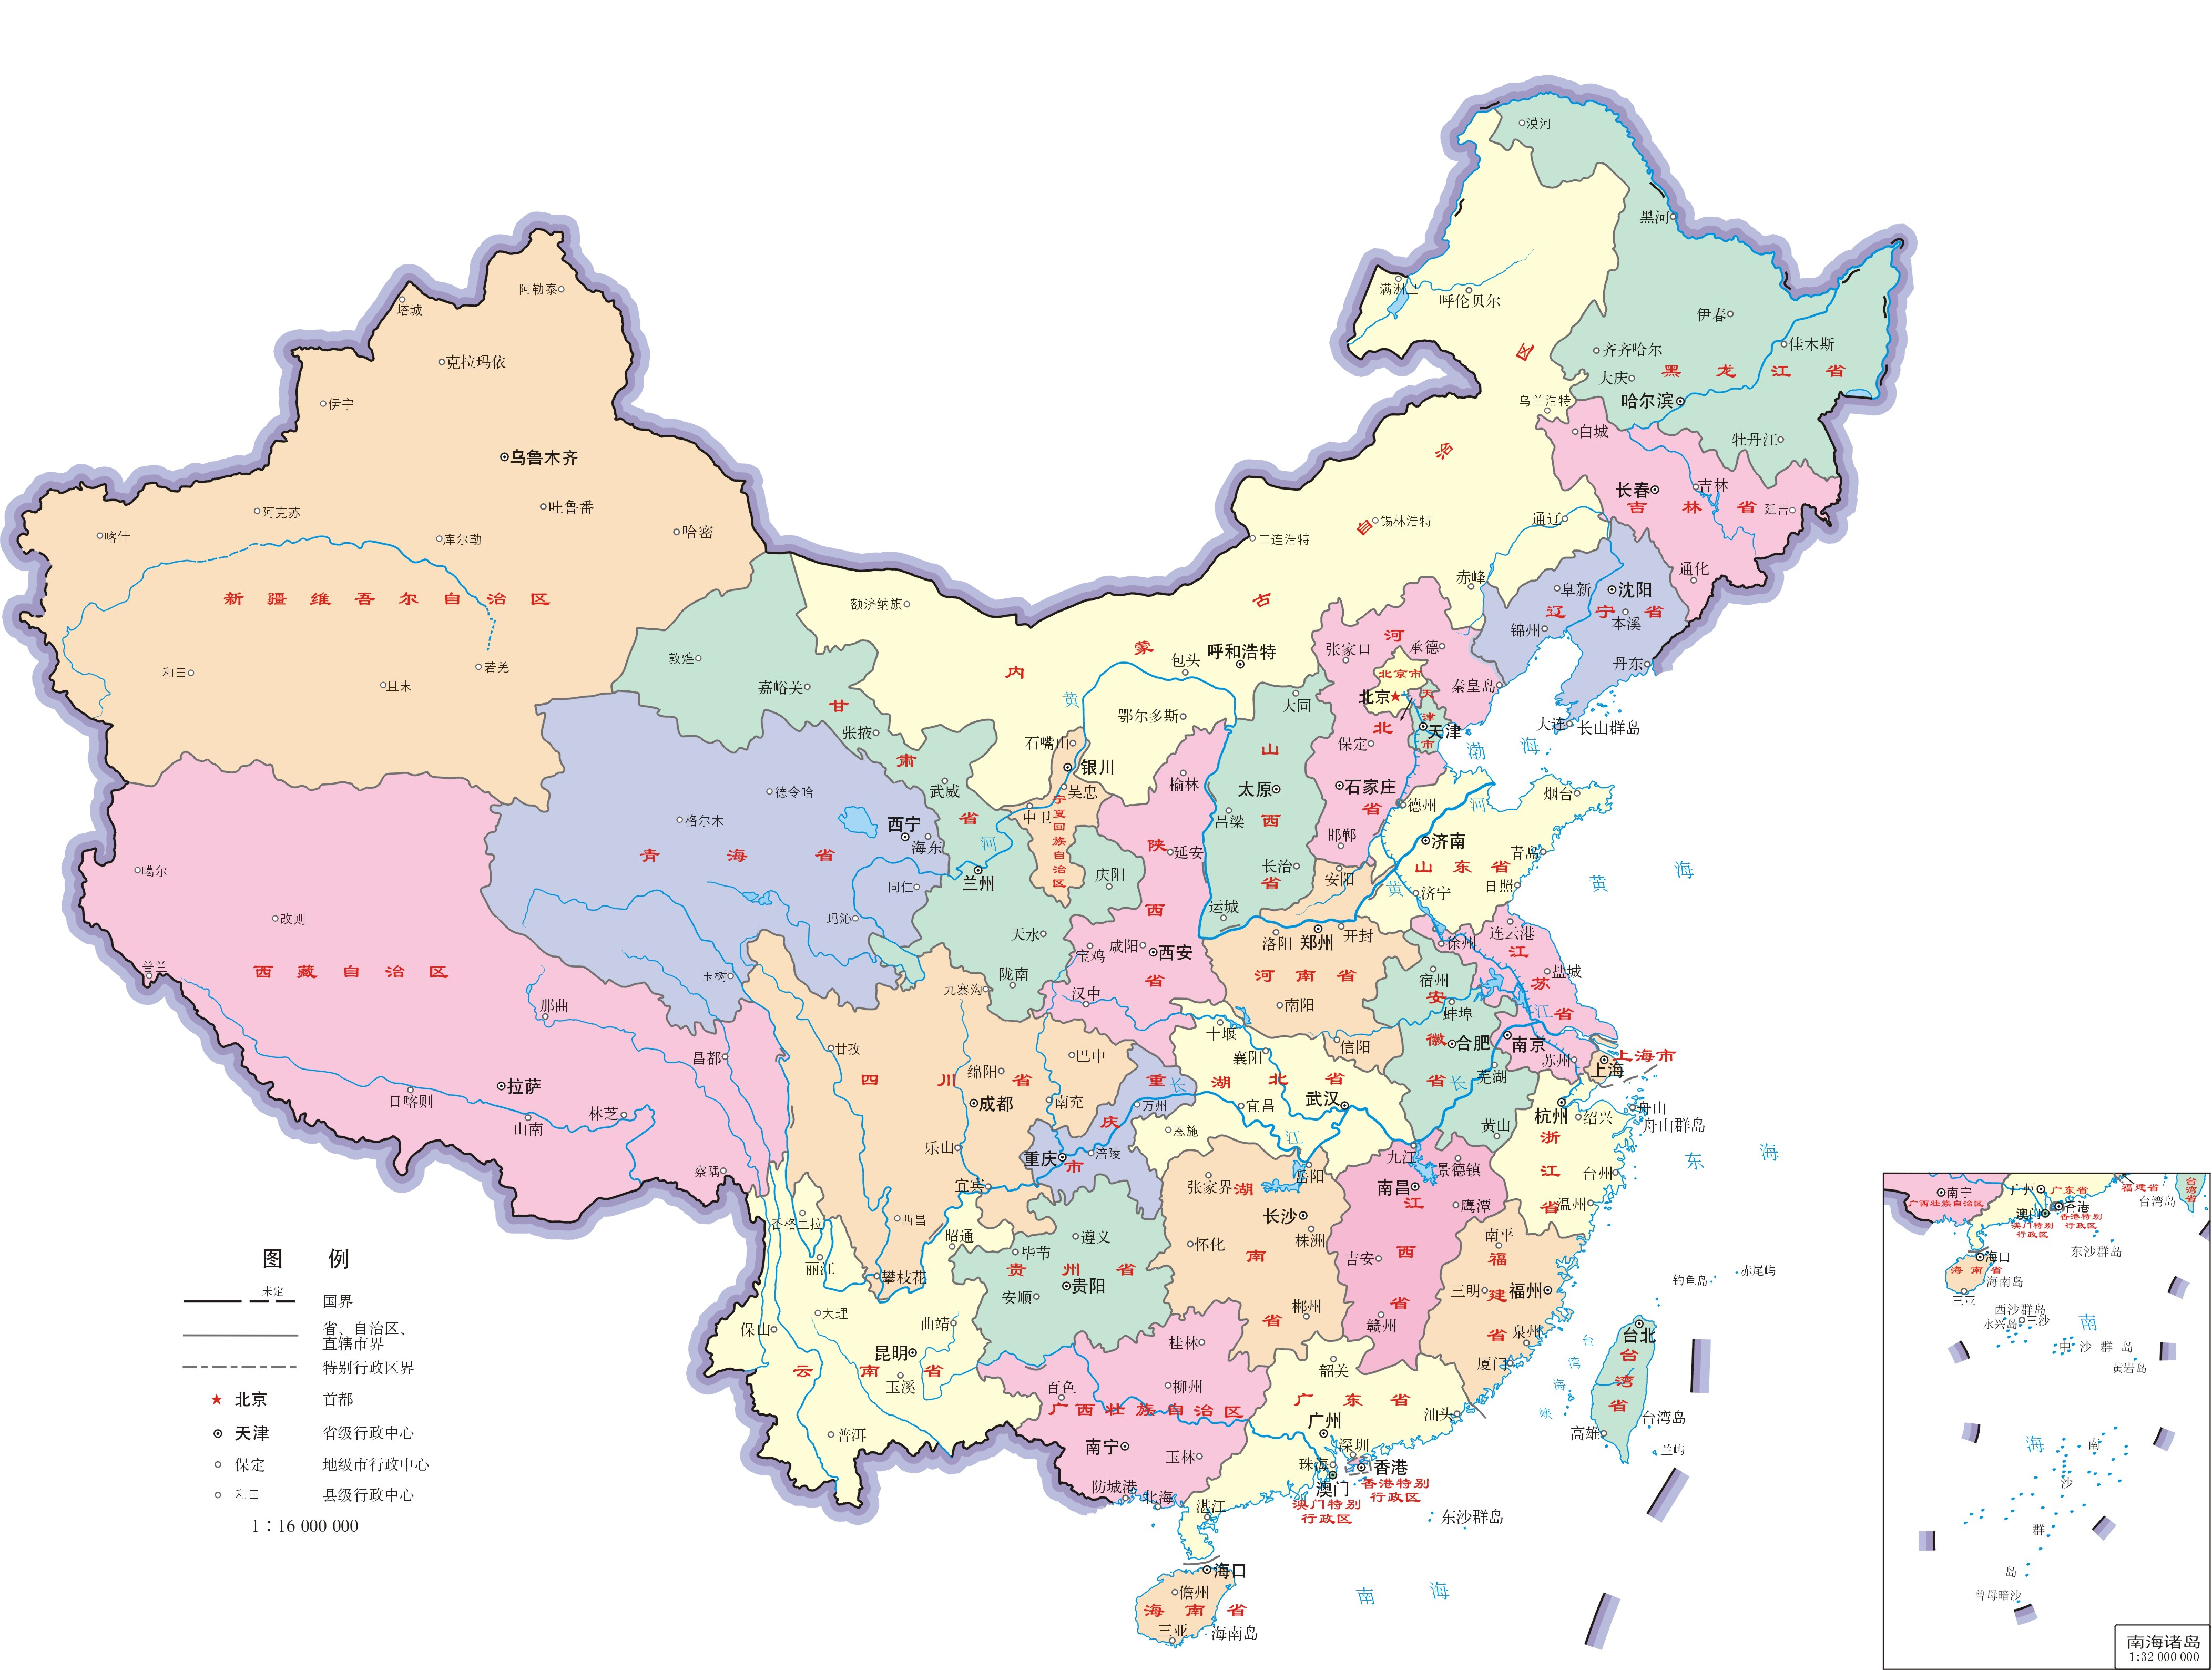 地图 地图宝贝拼拼乐中国(120片) 中国地图出版社 中国地图出版社 9787503190742